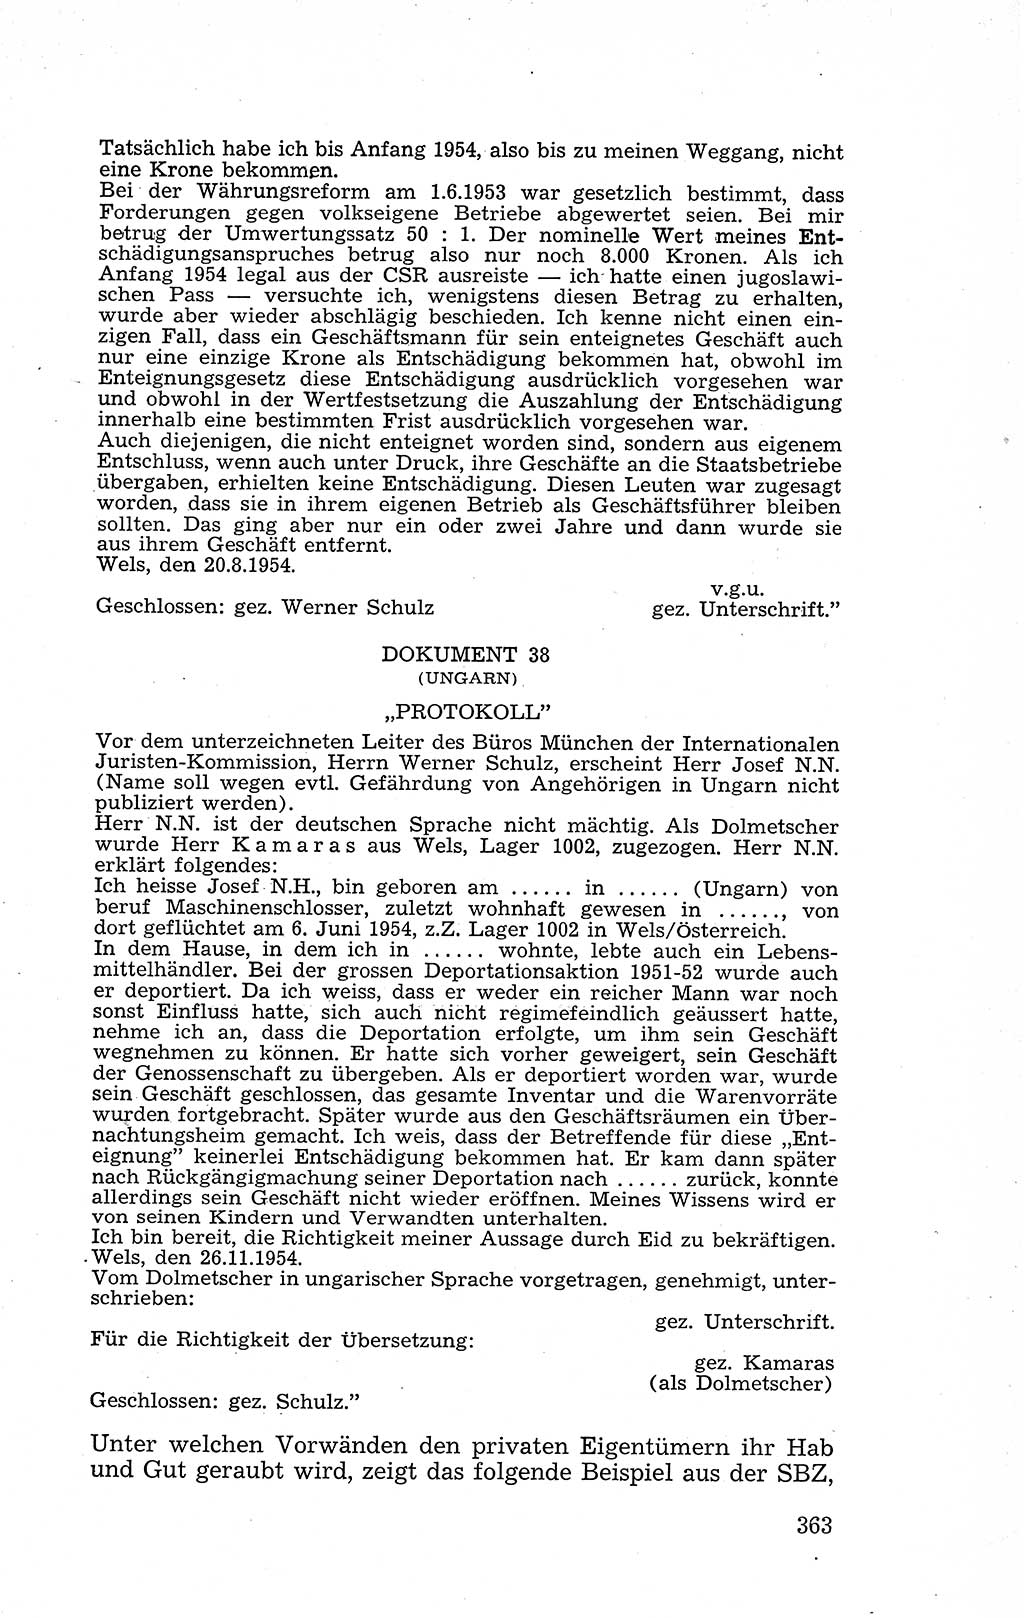 Recht in Fesseln, Dokumente, Internationale Juristen-Kommission [Bundesrepublik Deutschland (BRD)] 1955, Seite 363 (R. Dok. IJK BRD 1955, S. 363)